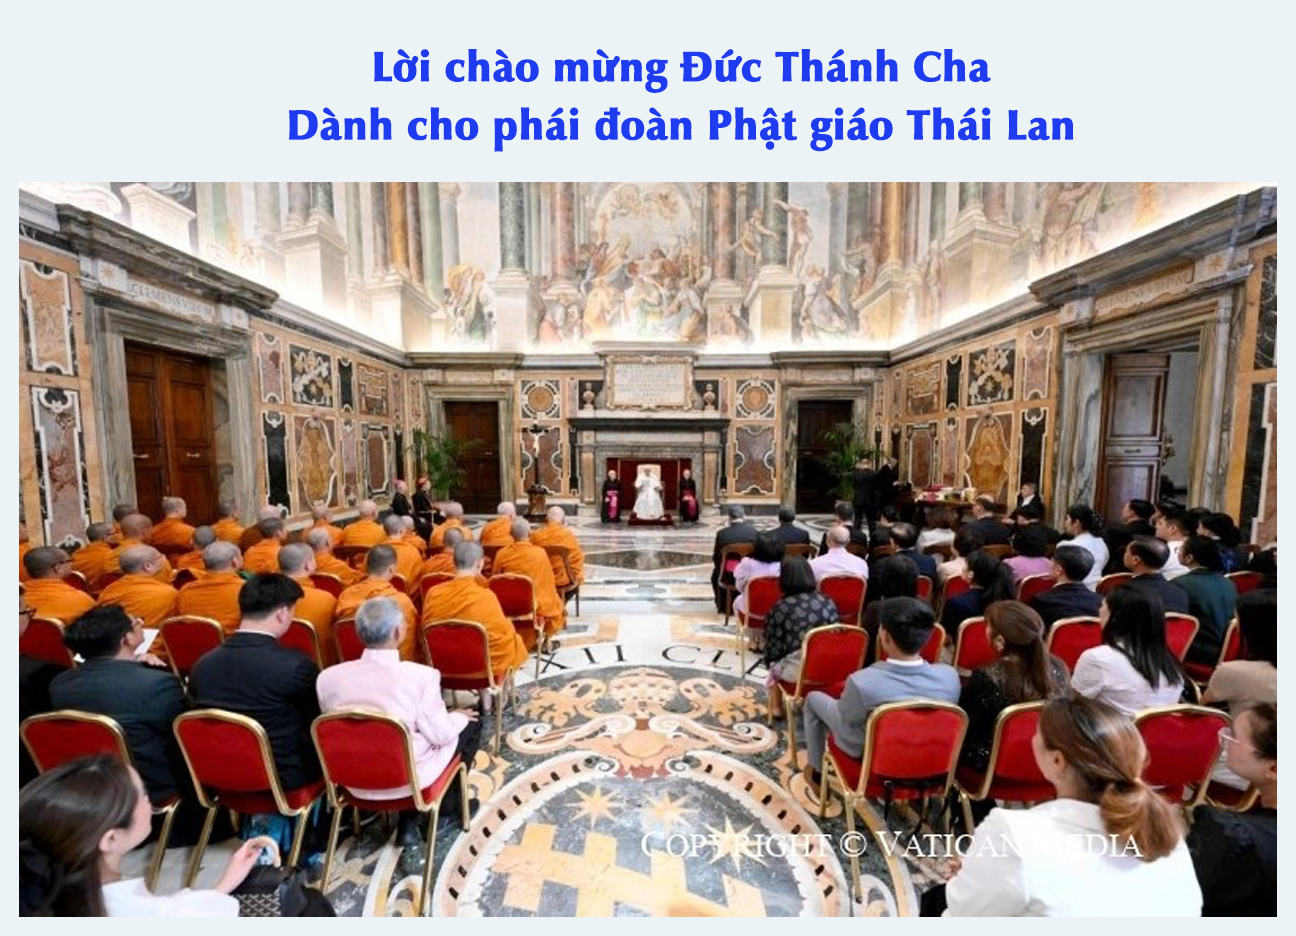 Lời chào mừng Đức Thánh Cha Dành cho phái đoàn Phật giáo Thái Lan